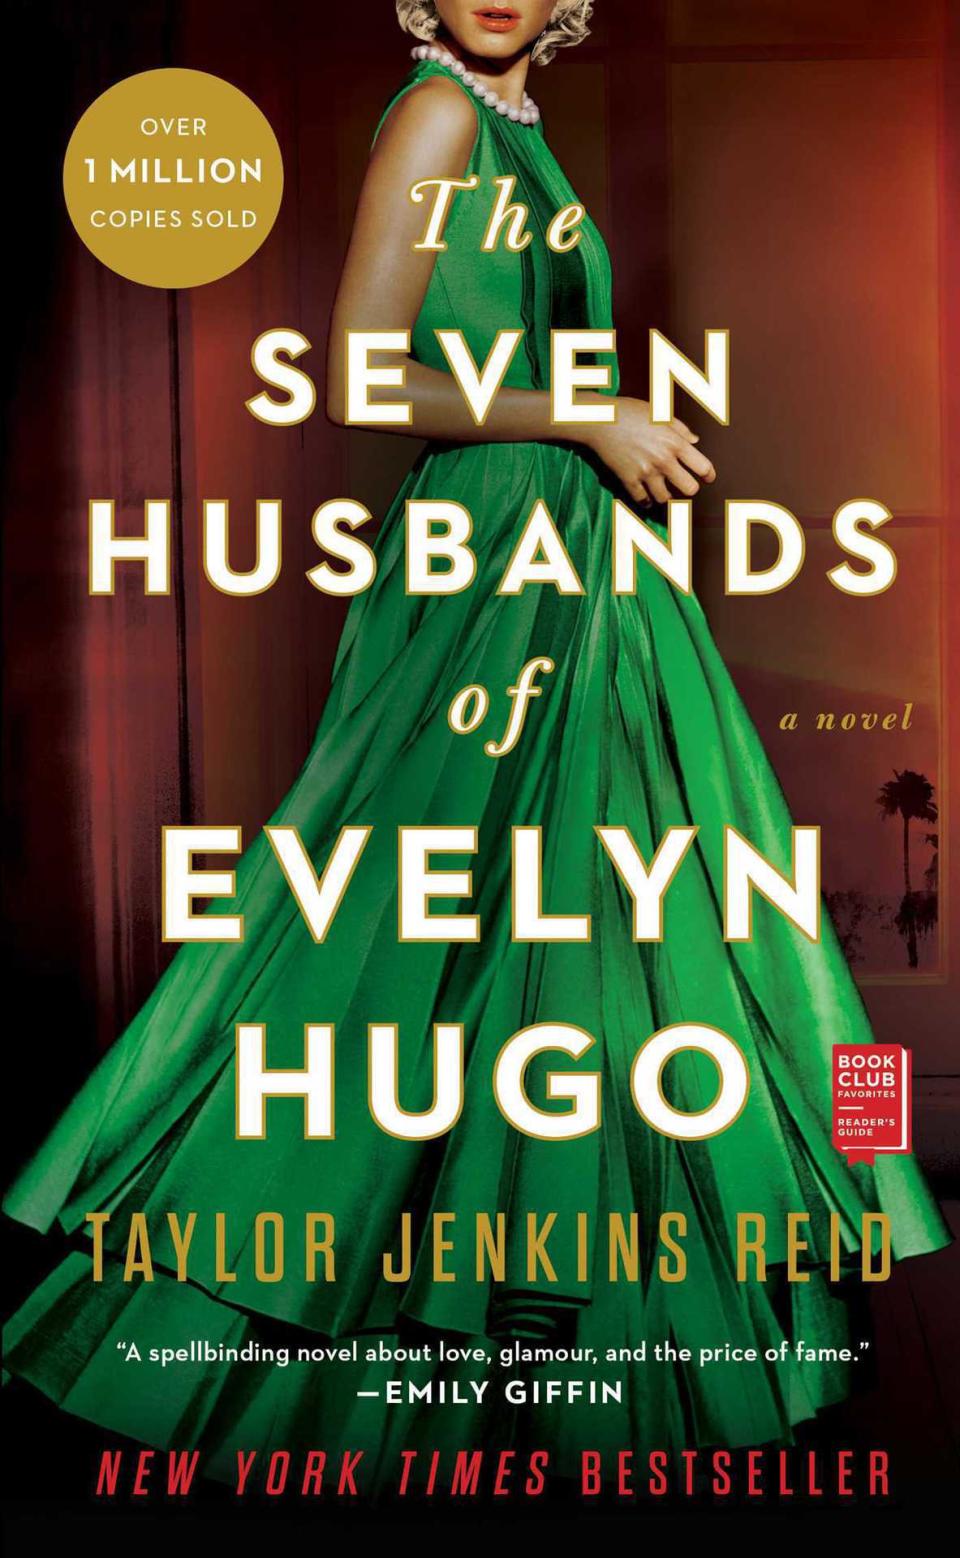 ‘The Seven Husbands of Evelyn Hugo’ by Taylor JenkinsReid